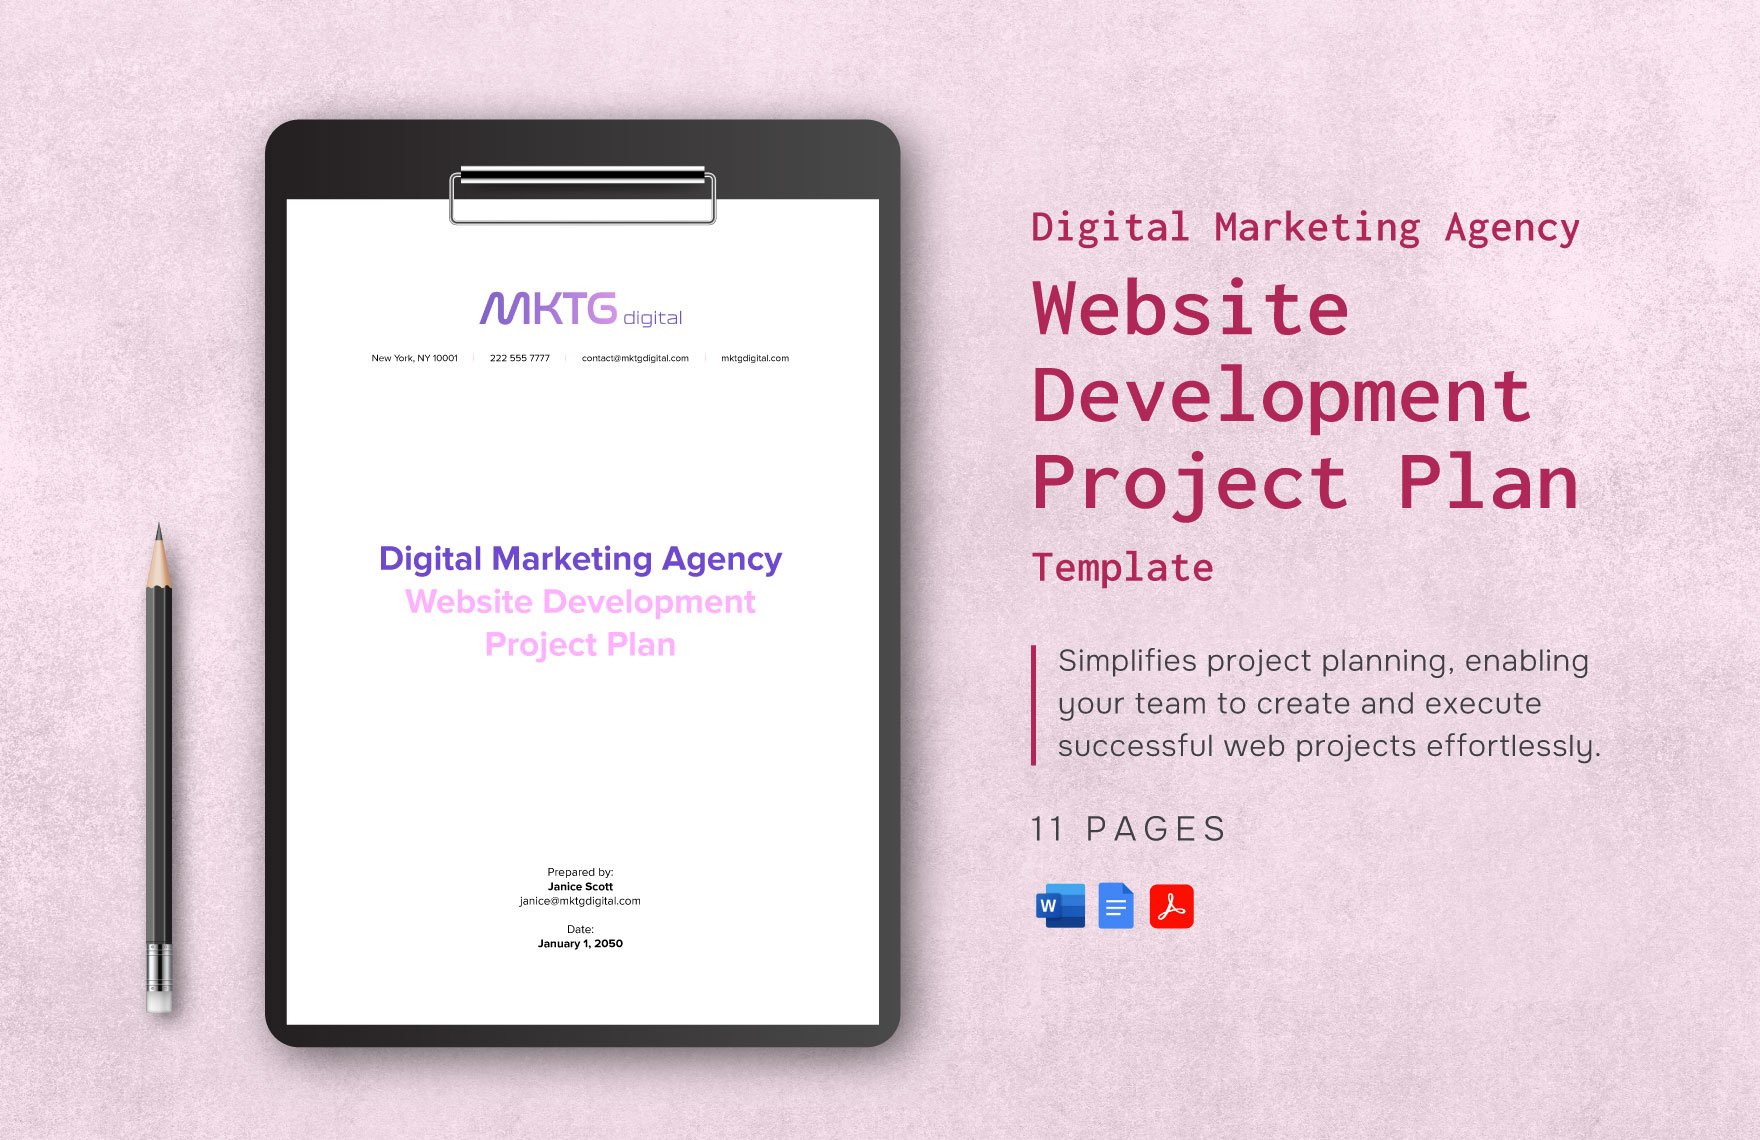 Digital Marketing Agency Website Development Project Plan Template